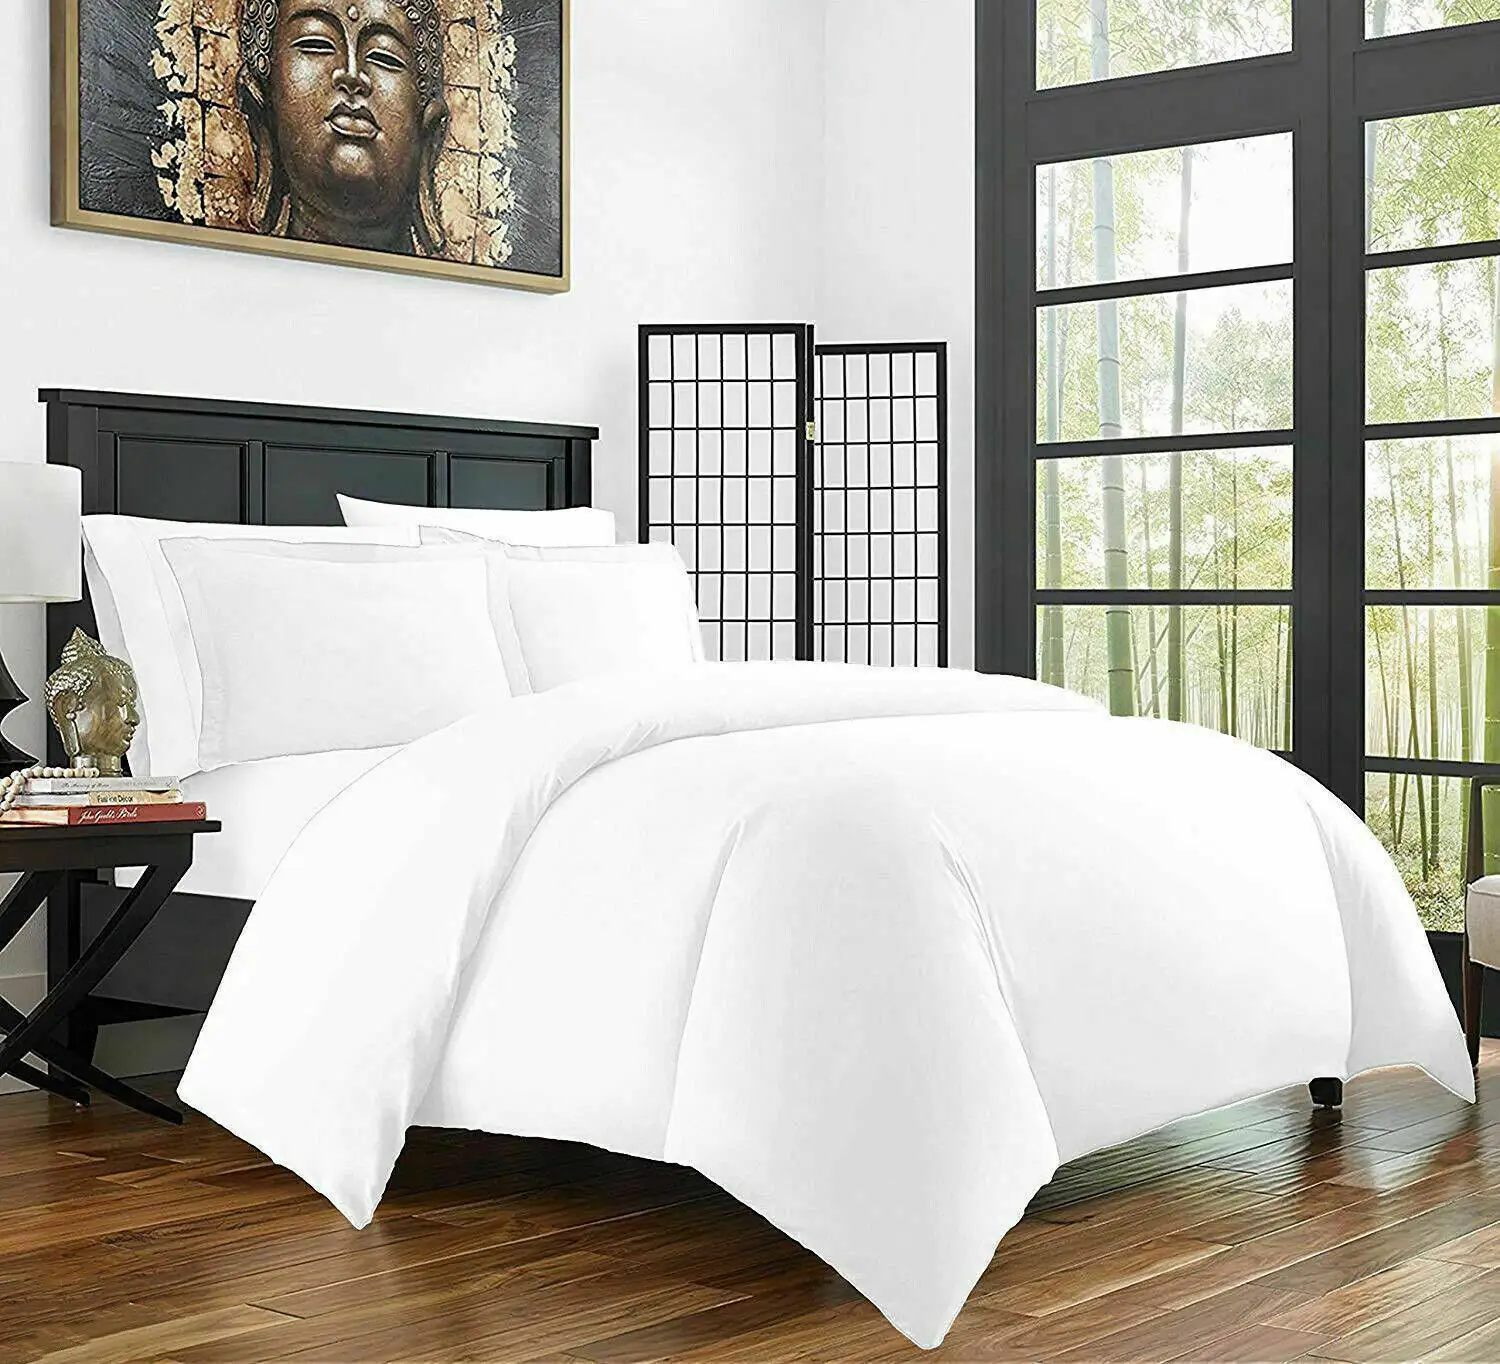 Toptan koleksiyonu basit tasarım yatak yorgan malzemeleri Dubai kapak sayfası 5 yıldızlı mobilya çift kişilik yatak boyutu otel yatak odası seti